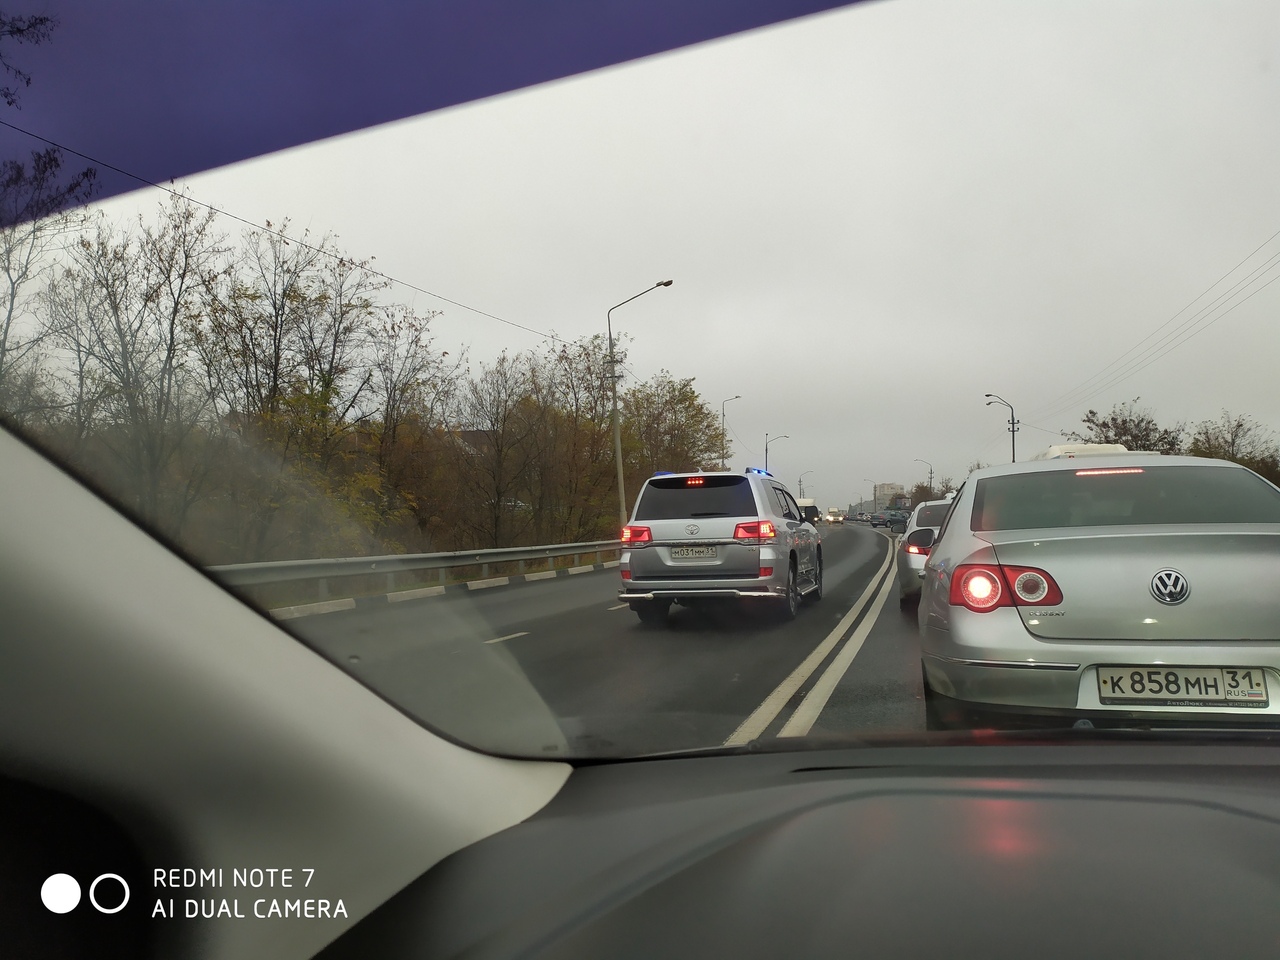 Евгений Савченко хочет отказаться от служебных автомобилей. А сколько на них вообще тратят?